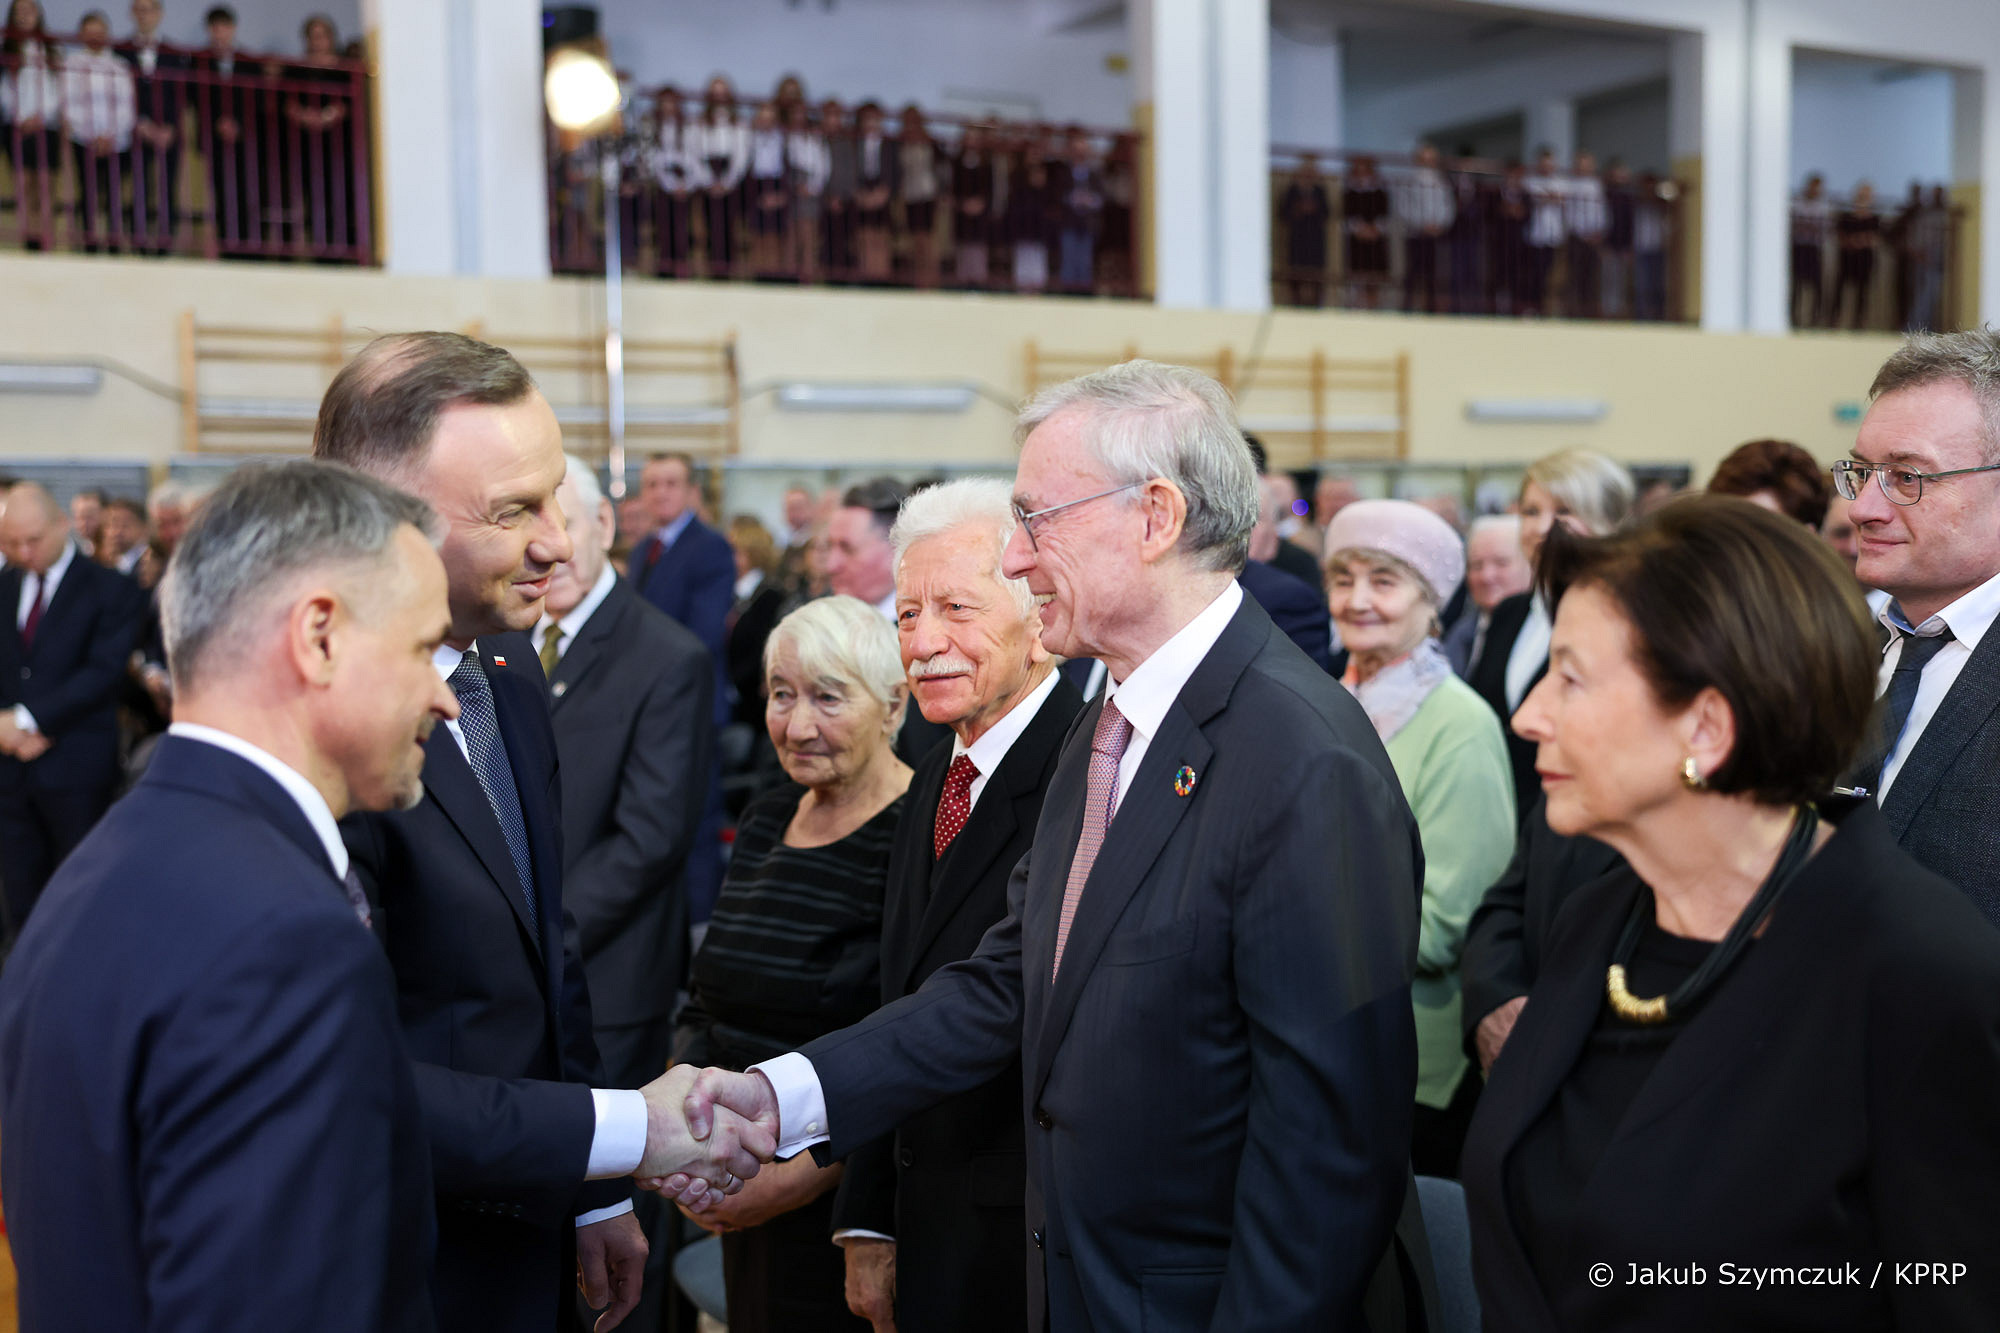 Trwają uroczystości z udziałem prezydenta Andrzeja Dudy z okazji 80. rocznicy wysiedleń mieszkańców Zamojszczyzny (zdjęcia)